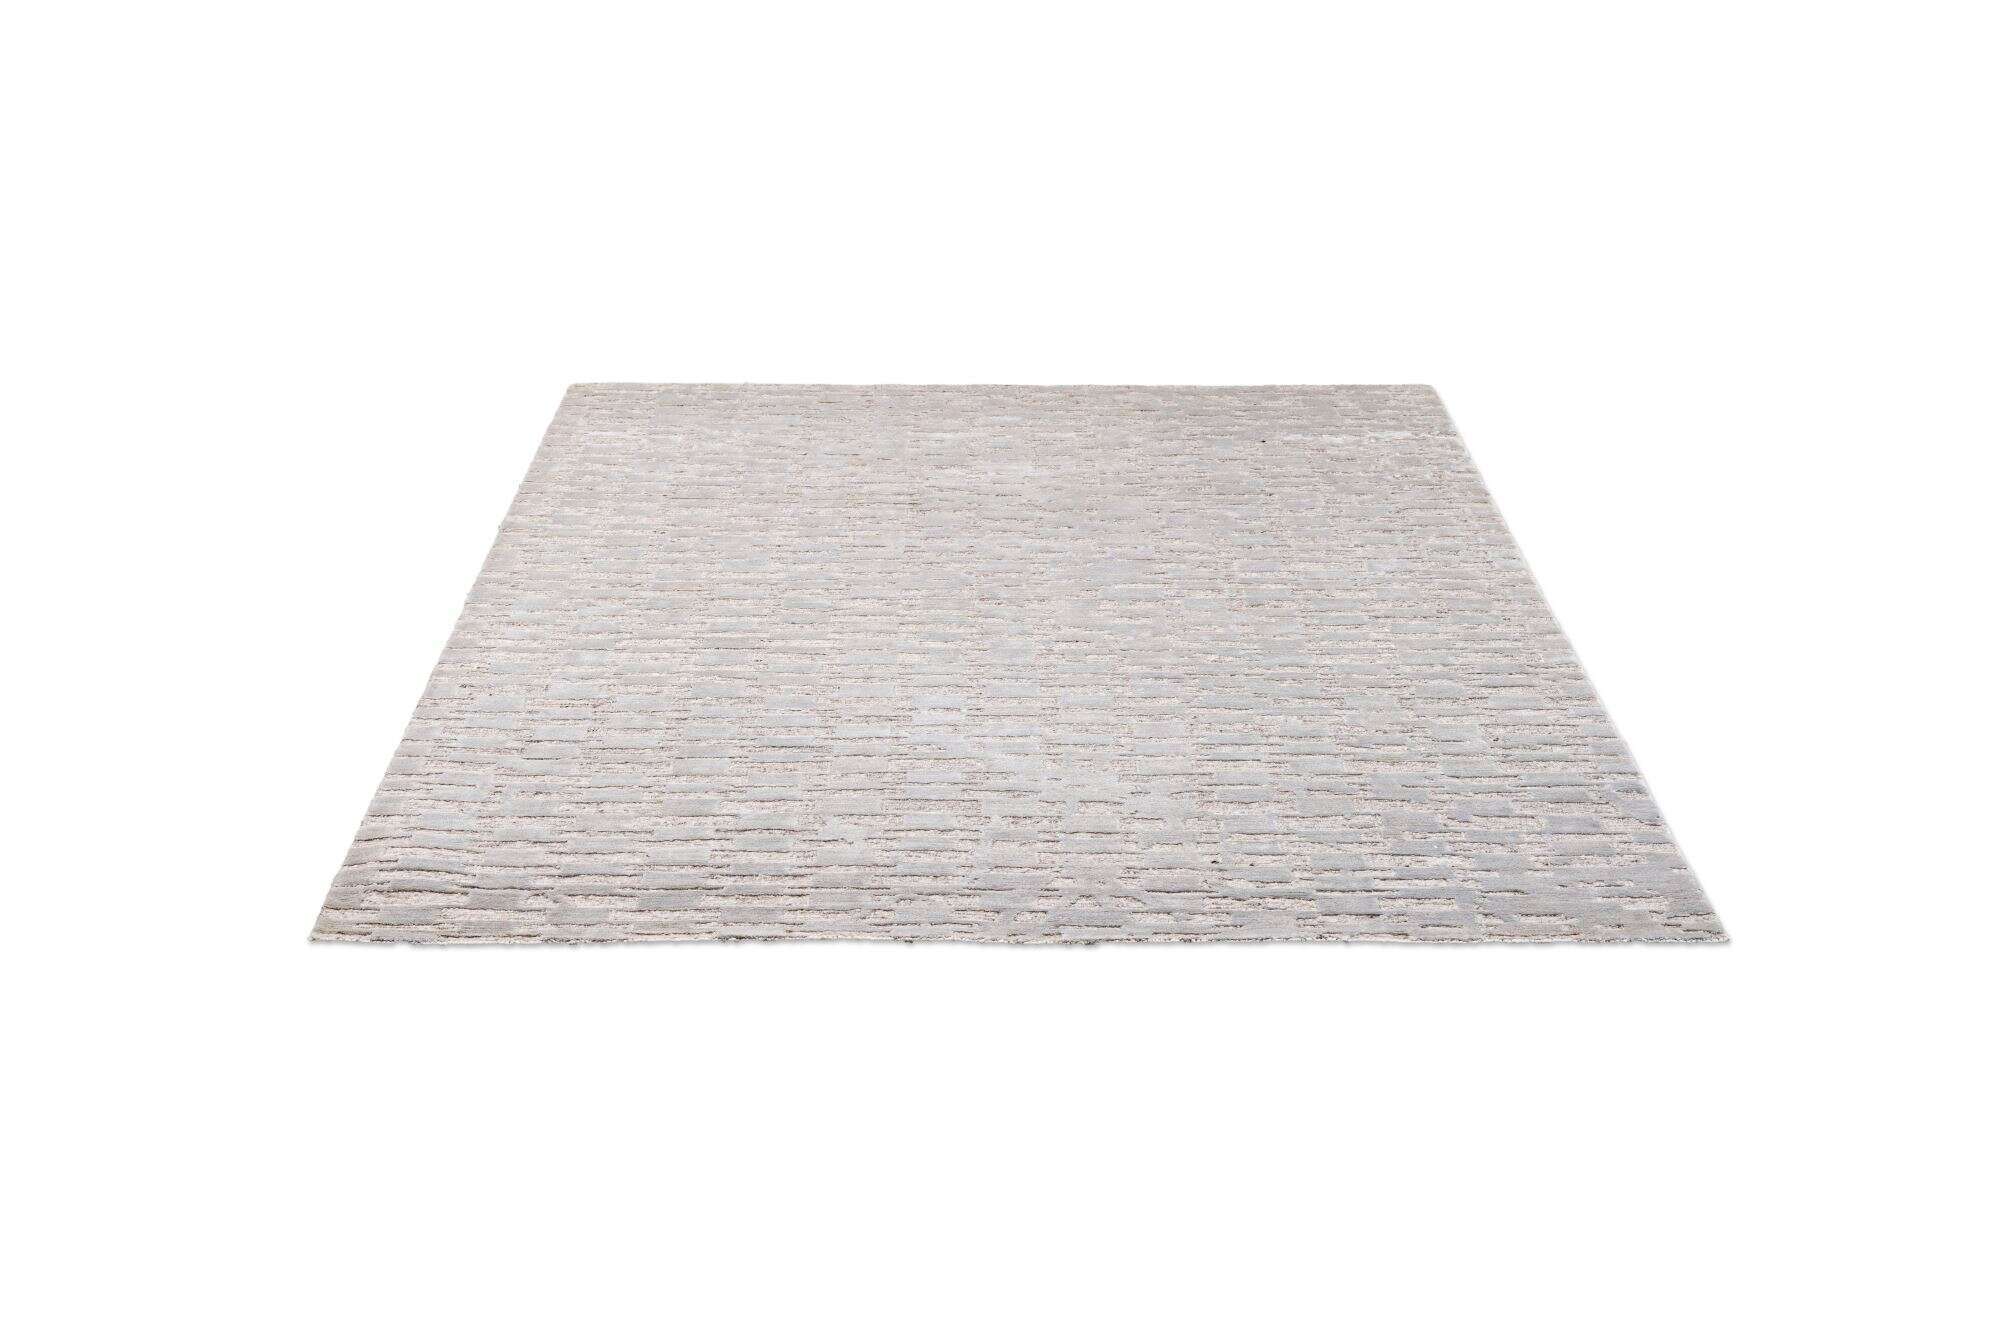 Victoria Moderner Teppich 160x230cm Viskose Wolle beige mit grau